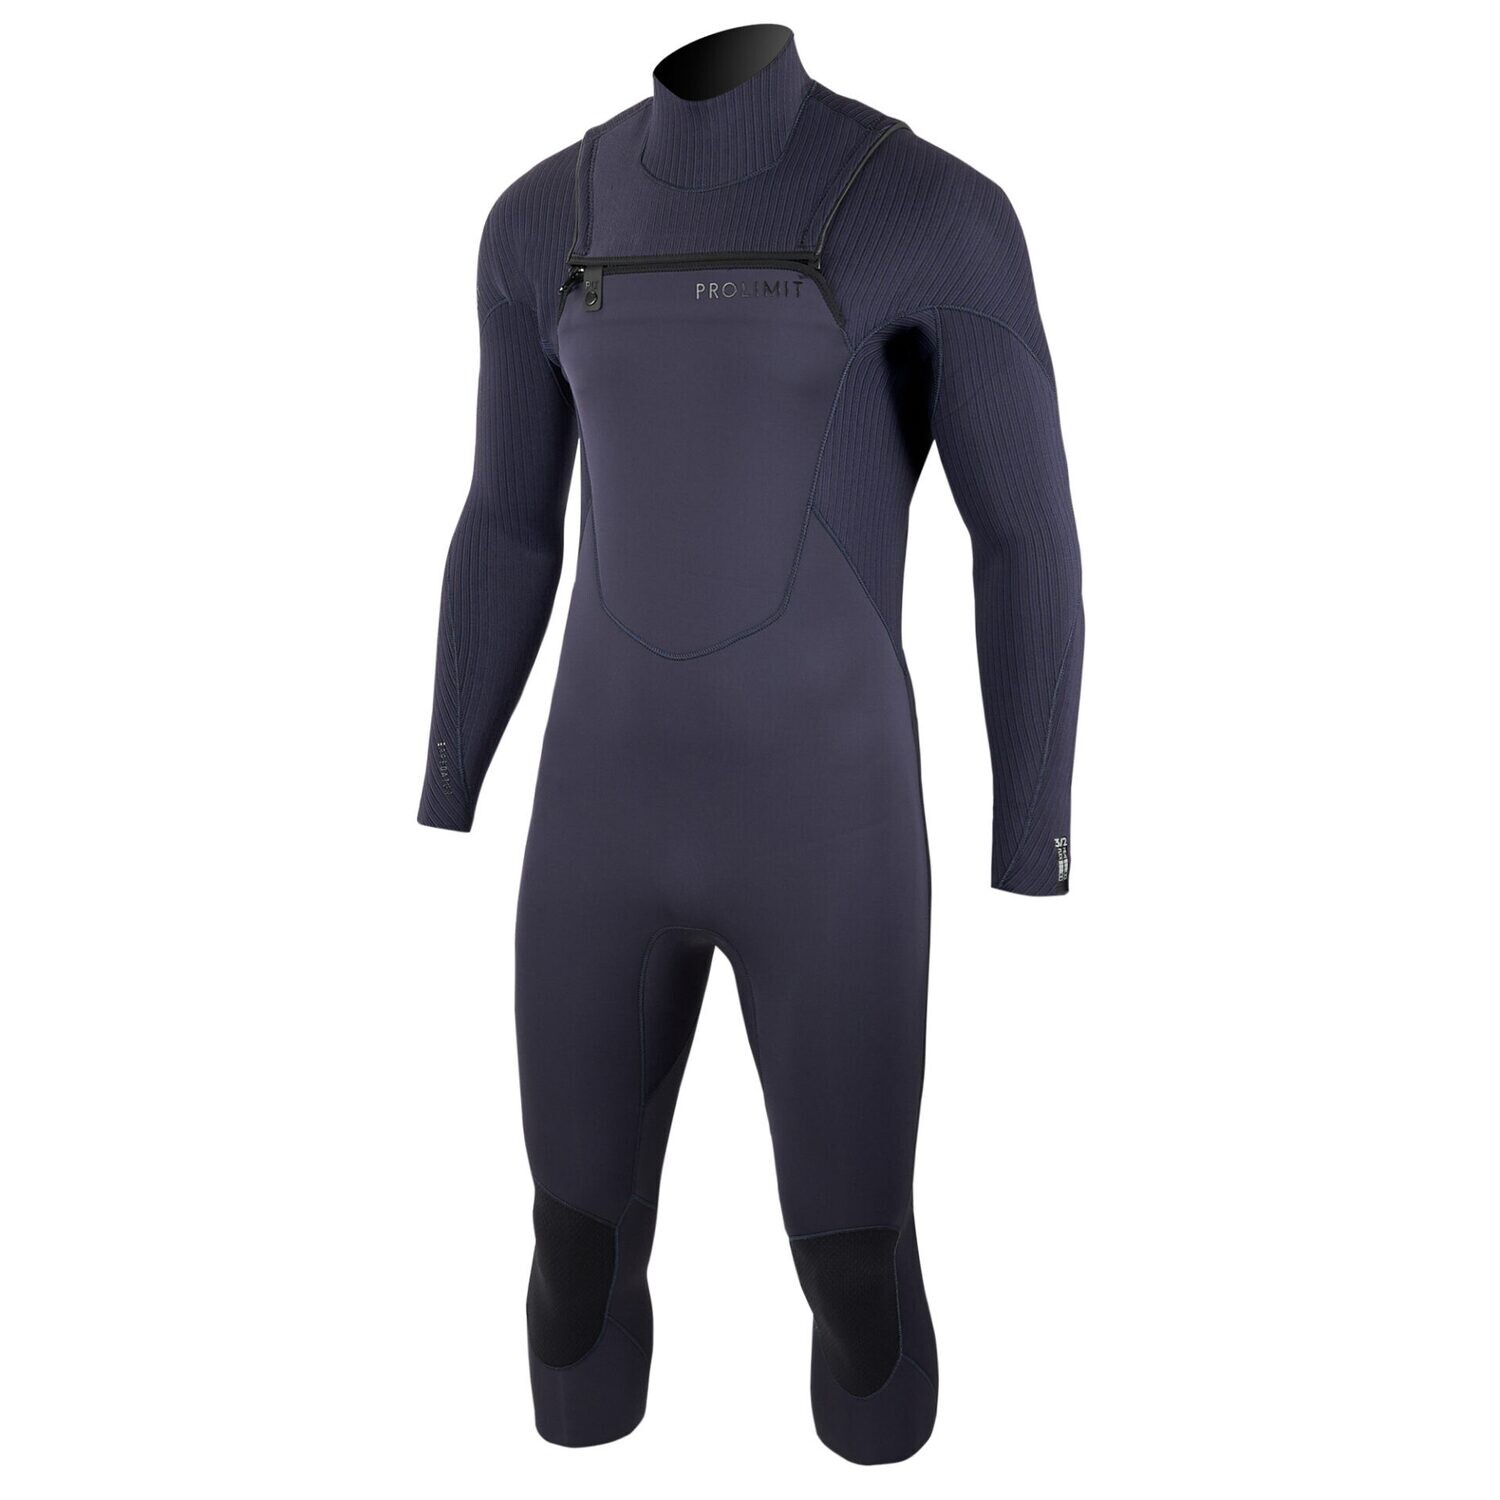 Prolimit Predator Steamer Freezip 3/2 wetsuit